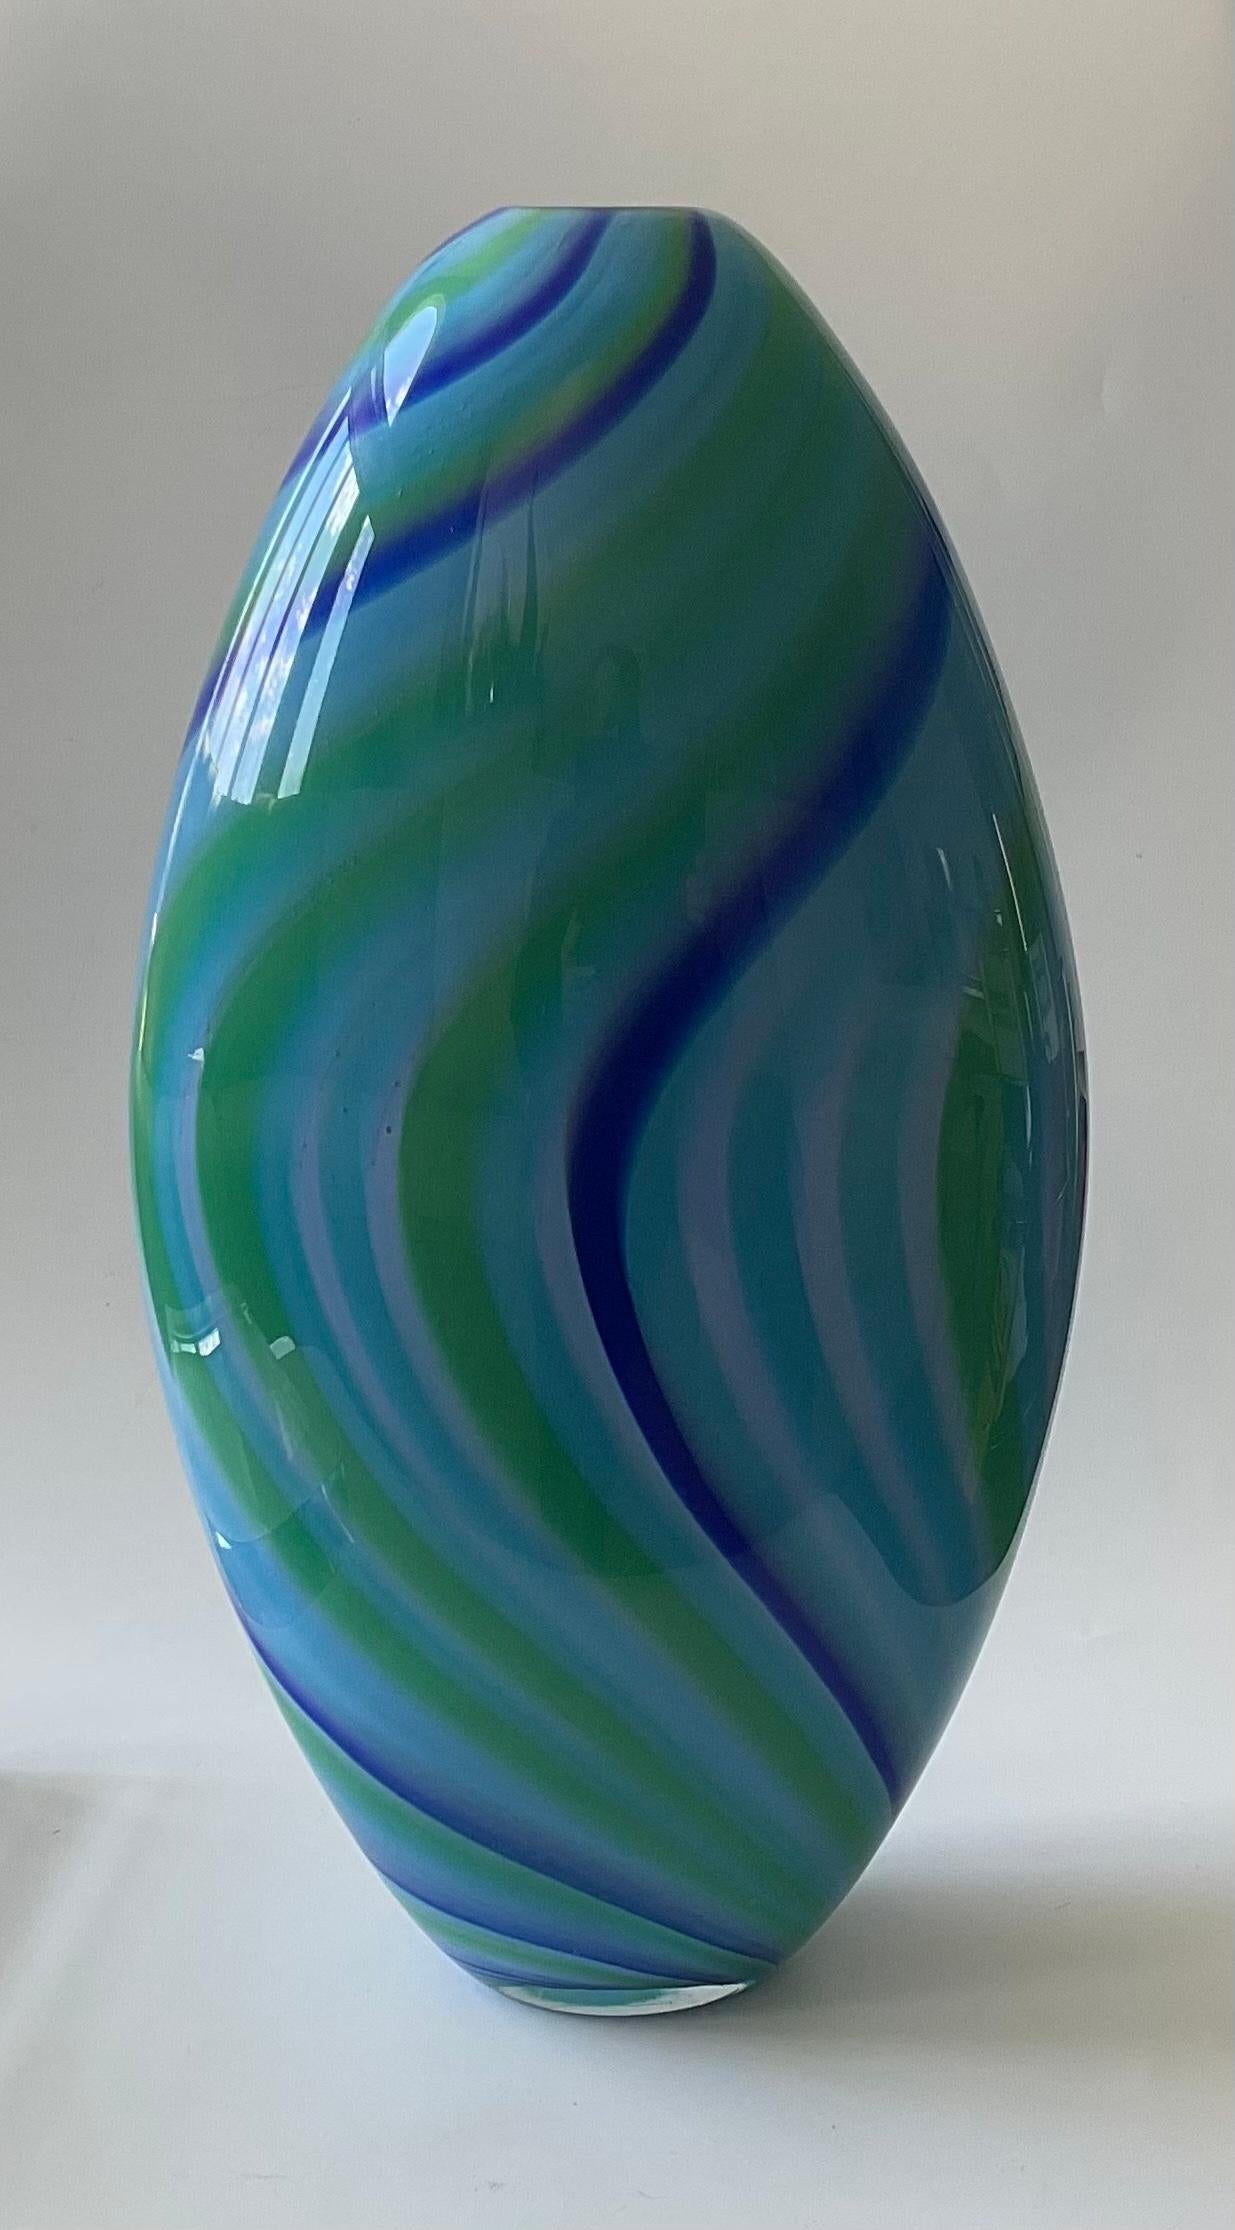 Grand vase en verre de Murano signé et numéroté Seguso Viro bleu vibrant. Merveilleux motif rayé tourbillonnant dans des couleurs vibrantes.